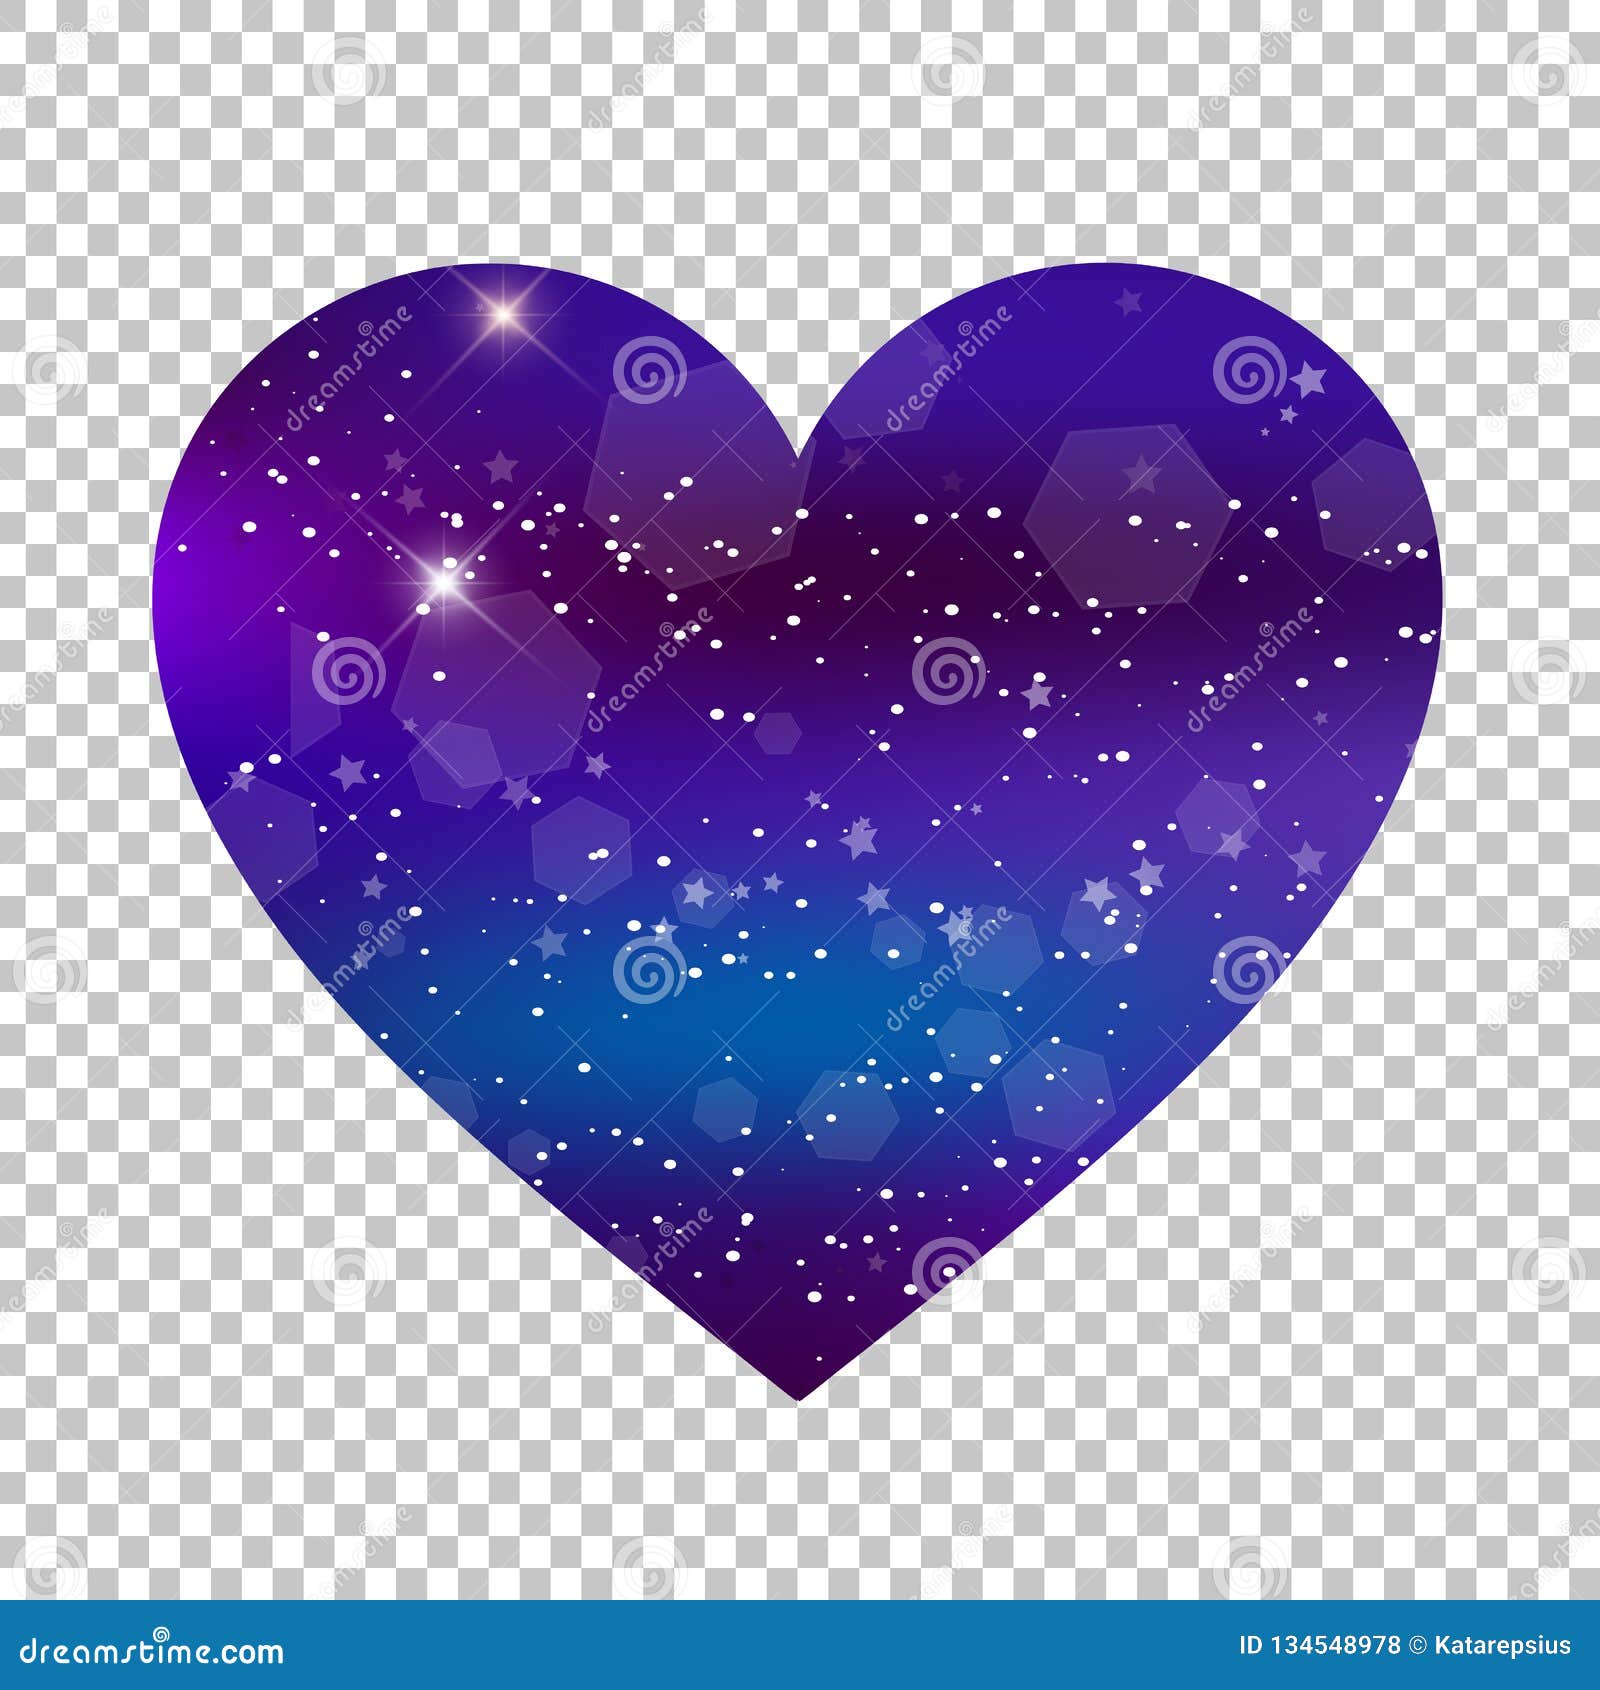 Galaxy Heart: Hình ảnh \